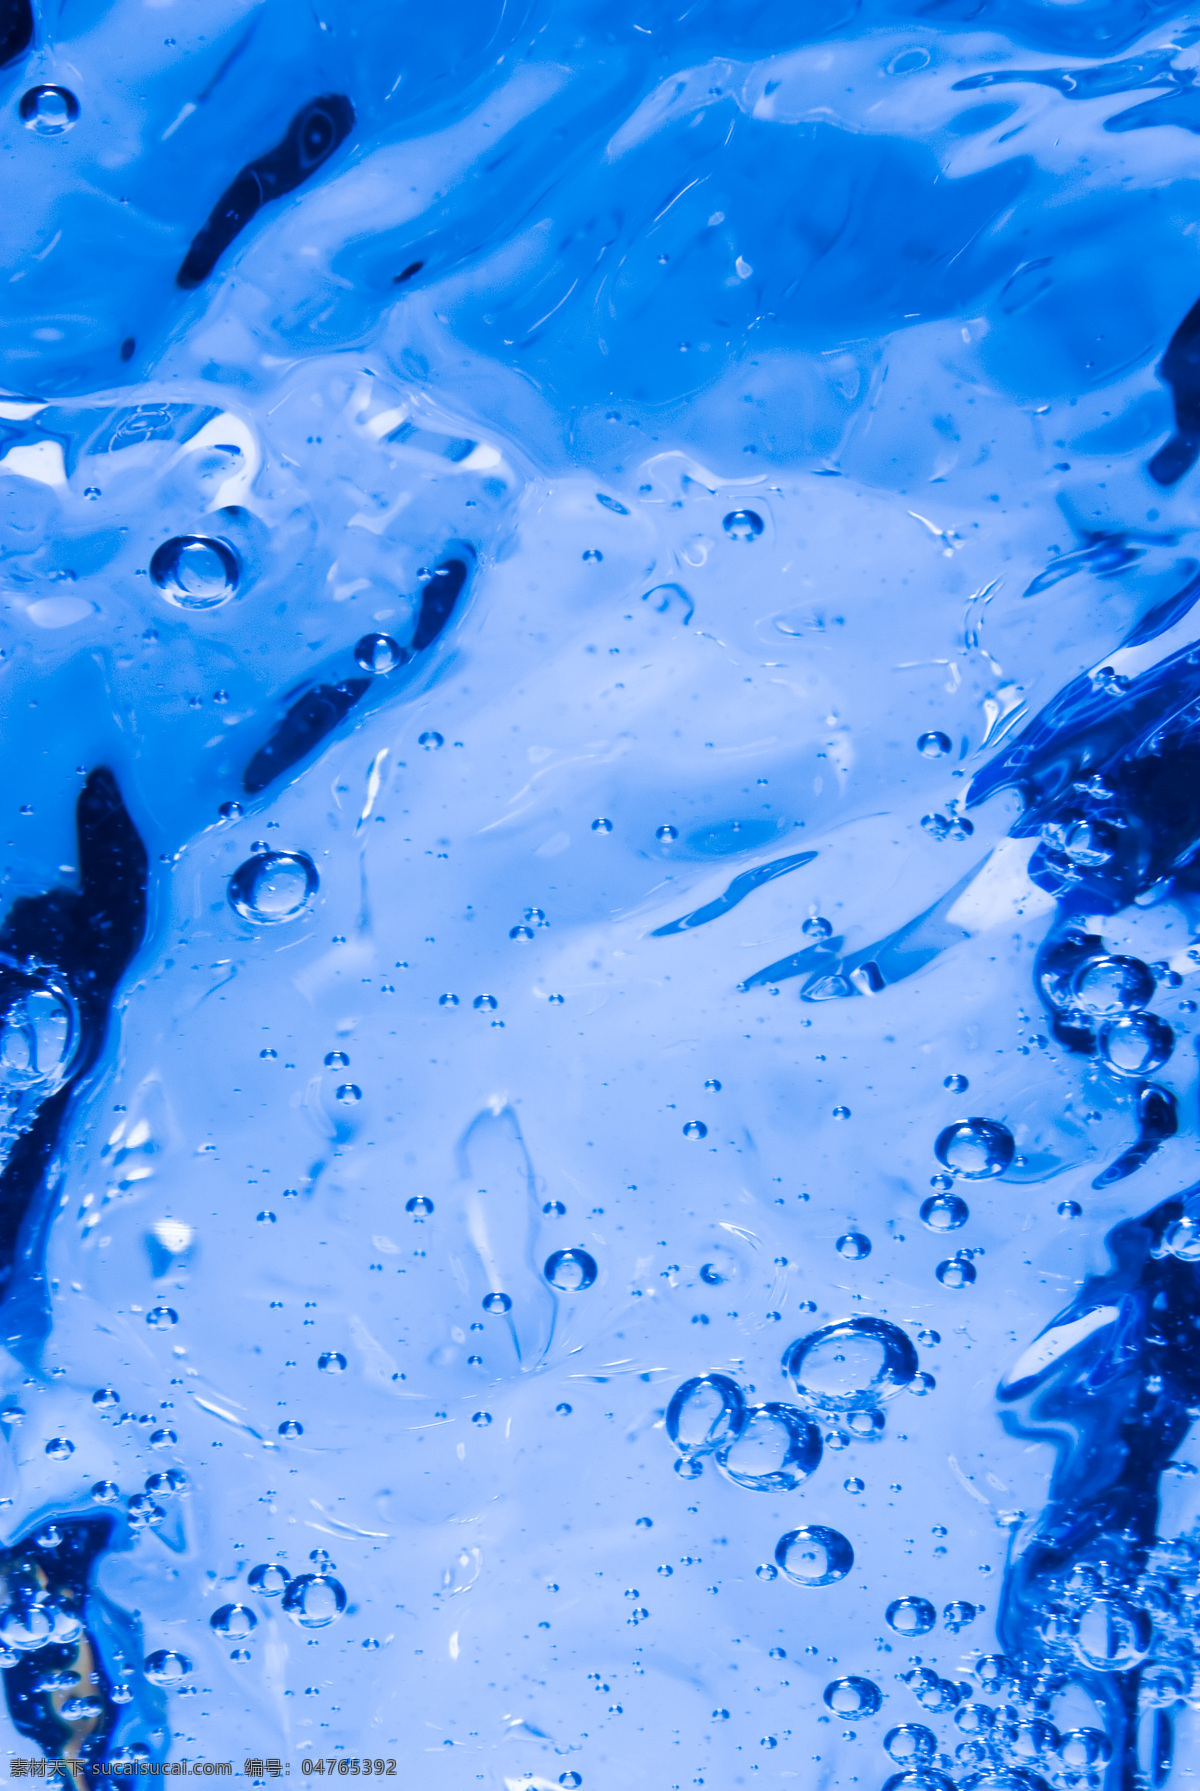 水与水泡 水 水珠 水滴 水珠图片 清澈的水 干净 清澈 水元素 水泡 气泡 冰水烈火 生活百科 蓝色